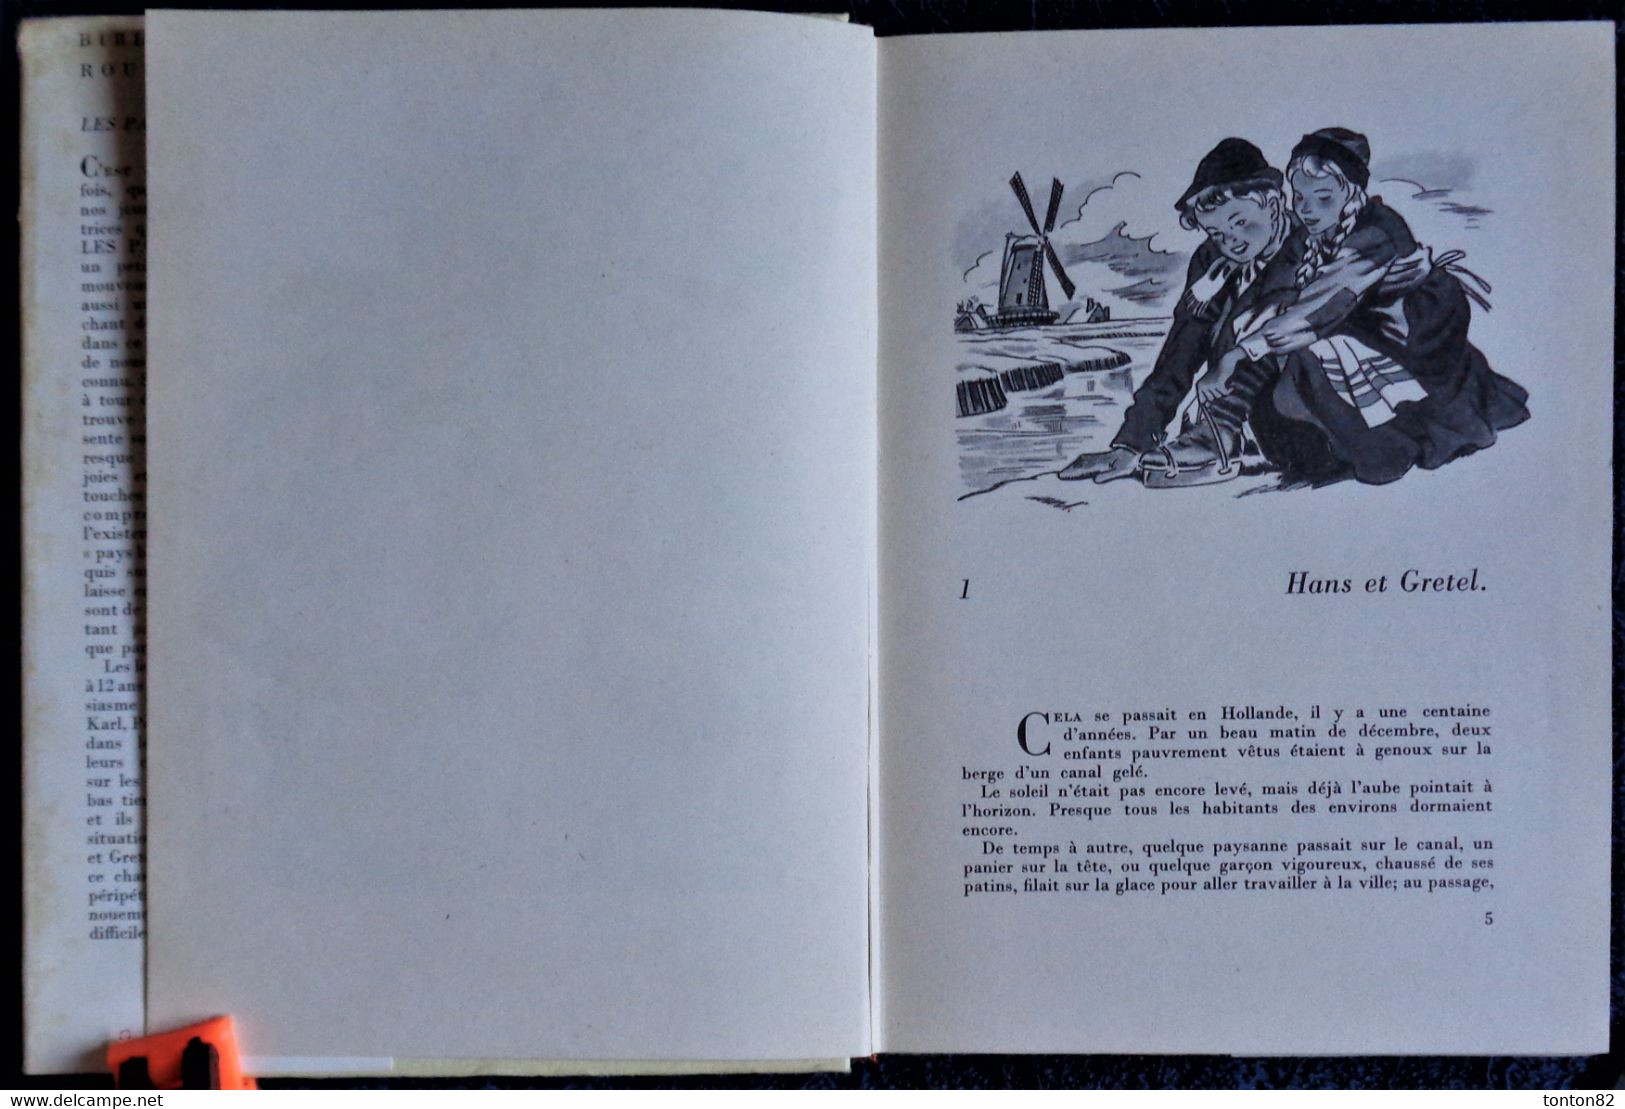 Matie Mapes Dodge - Les Patins D'Argent - Bibliothèque Rouge Et Or N° 500 - ( 1952 ) . - Bibliotheque Rouge Et Or